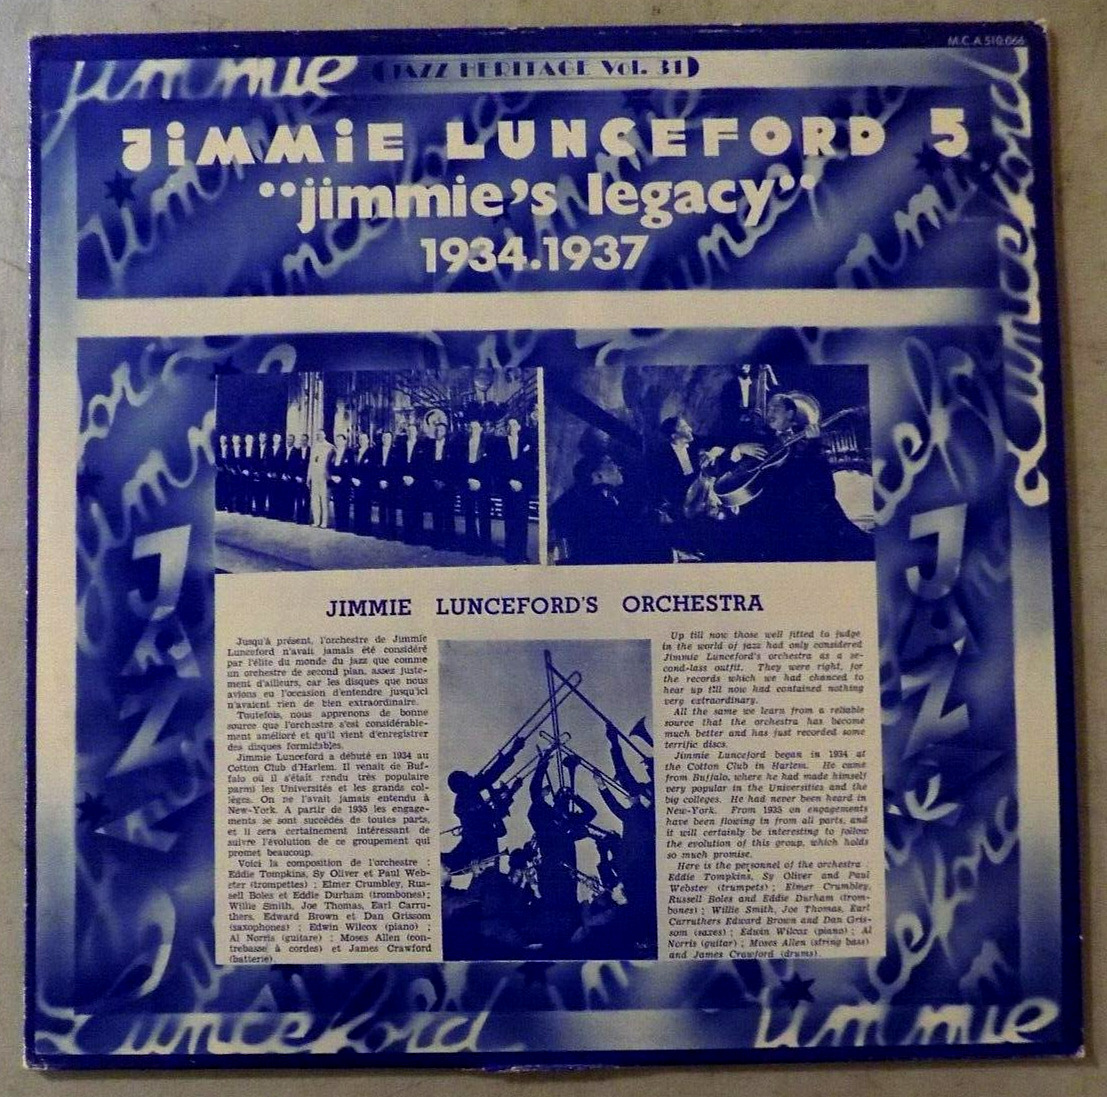 JIMMIE LUNCEFORD - France LP - Jimmie's Legacy 1934-1937 - MCA 510.066 - EX/VG+